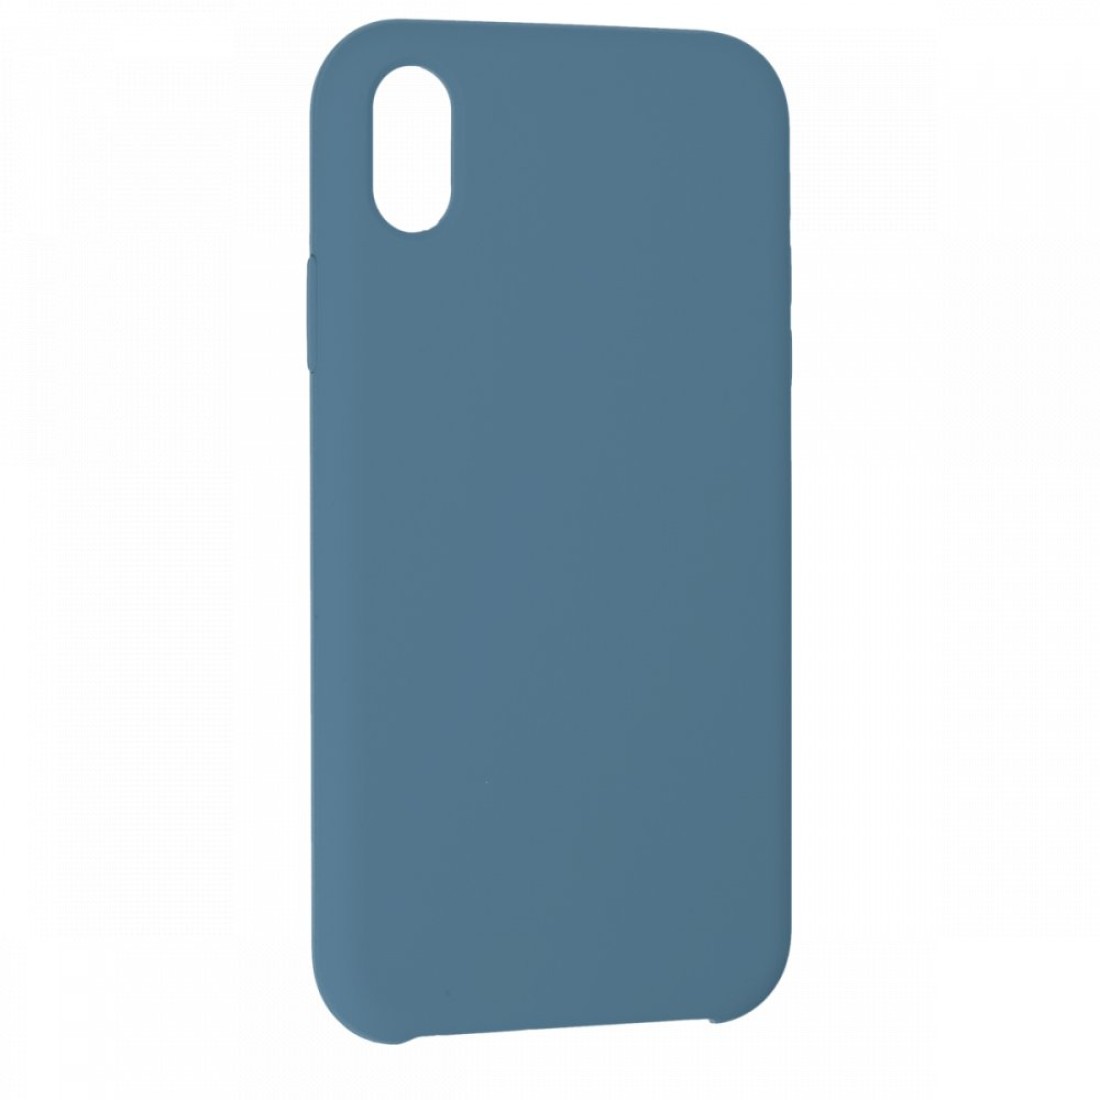 Apple iPhone XR Kılıf Lansman Legant Silikon - Açık Mavi